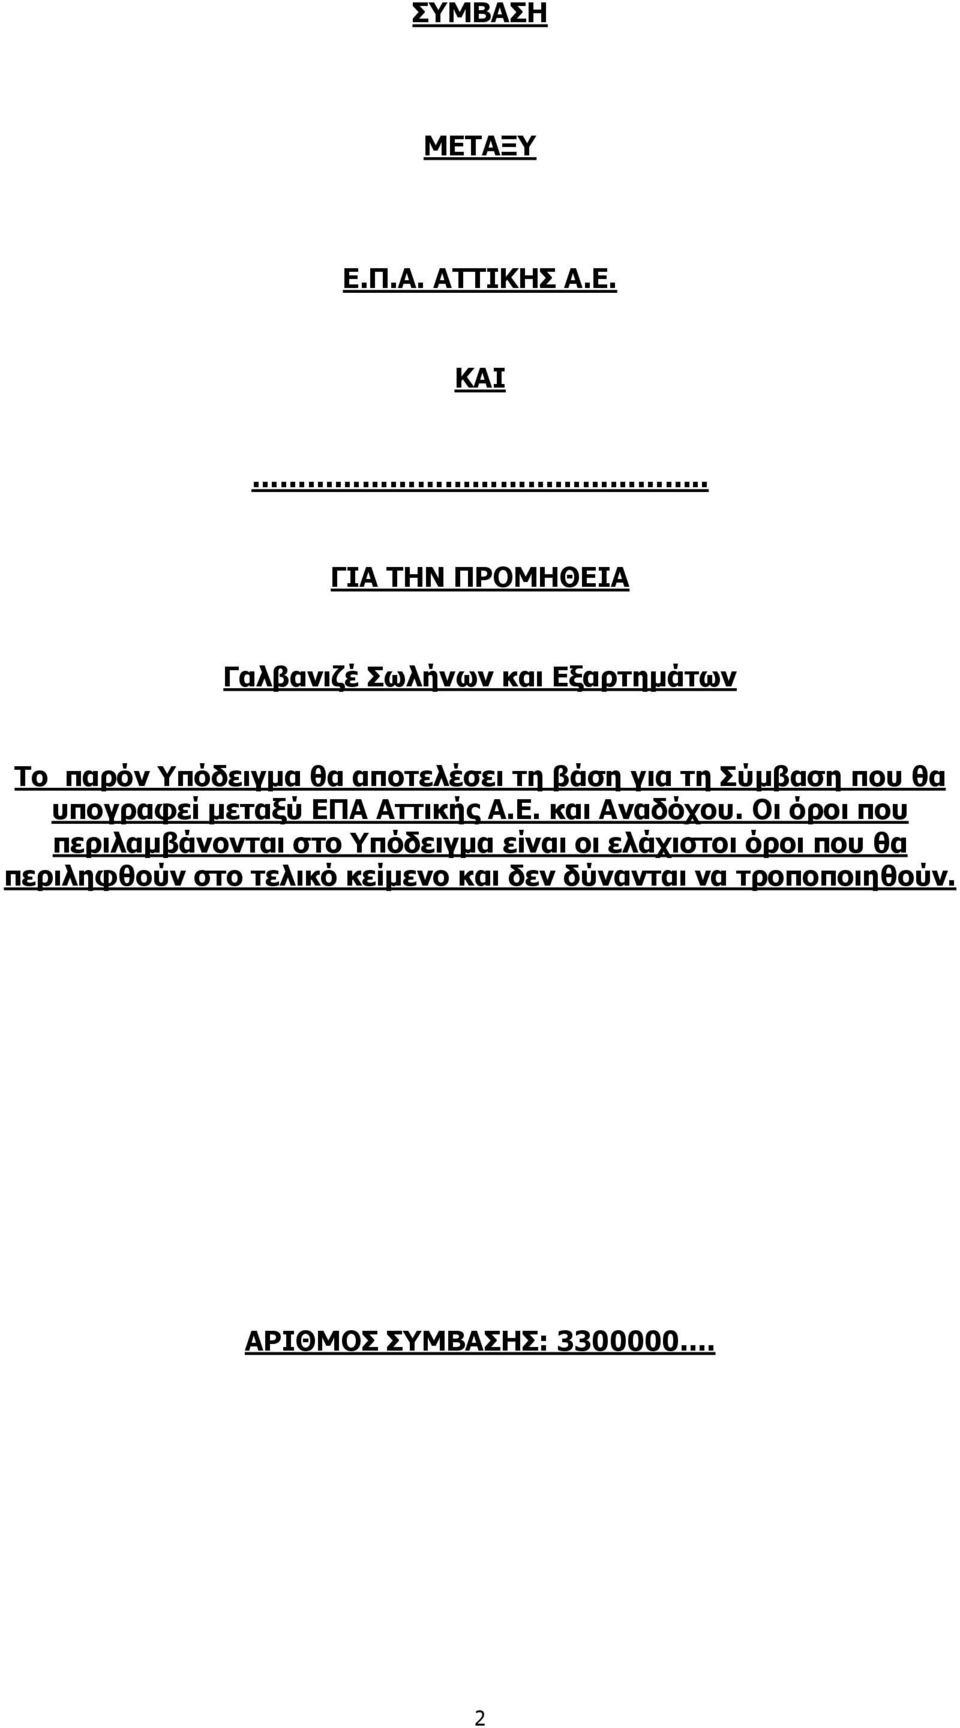 βάση για τη Σύμβαση που θα υπογραφεί μεταξύ ΕΠΑ Αττικής Α.Ε. και Αναδόχου.